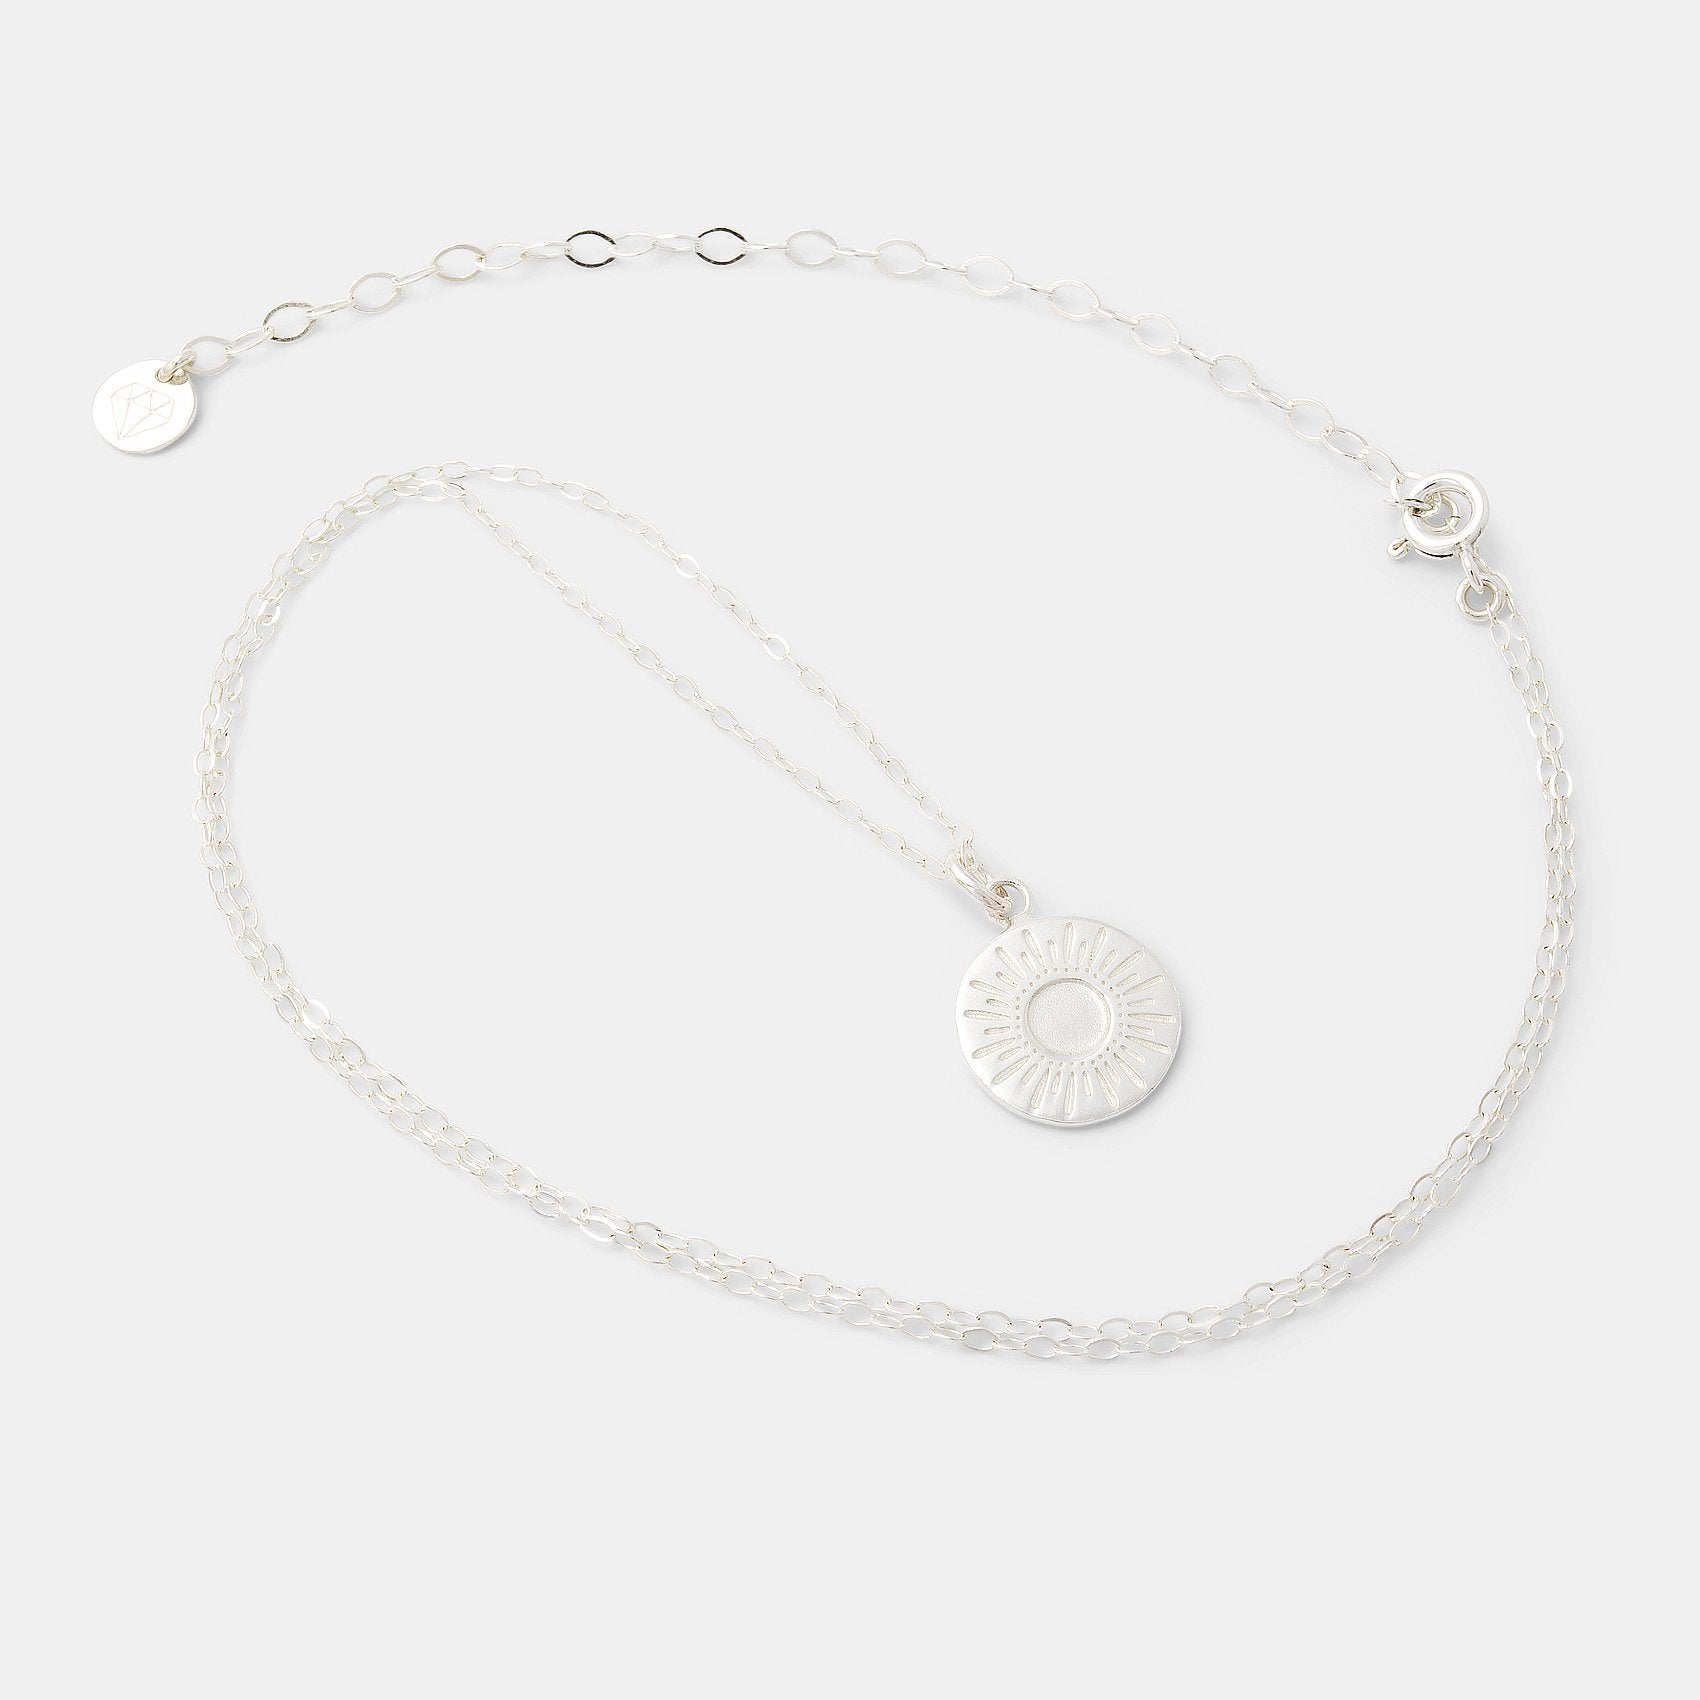 Sunburst amulet necklace - Simone Walsh Jewellery Australia